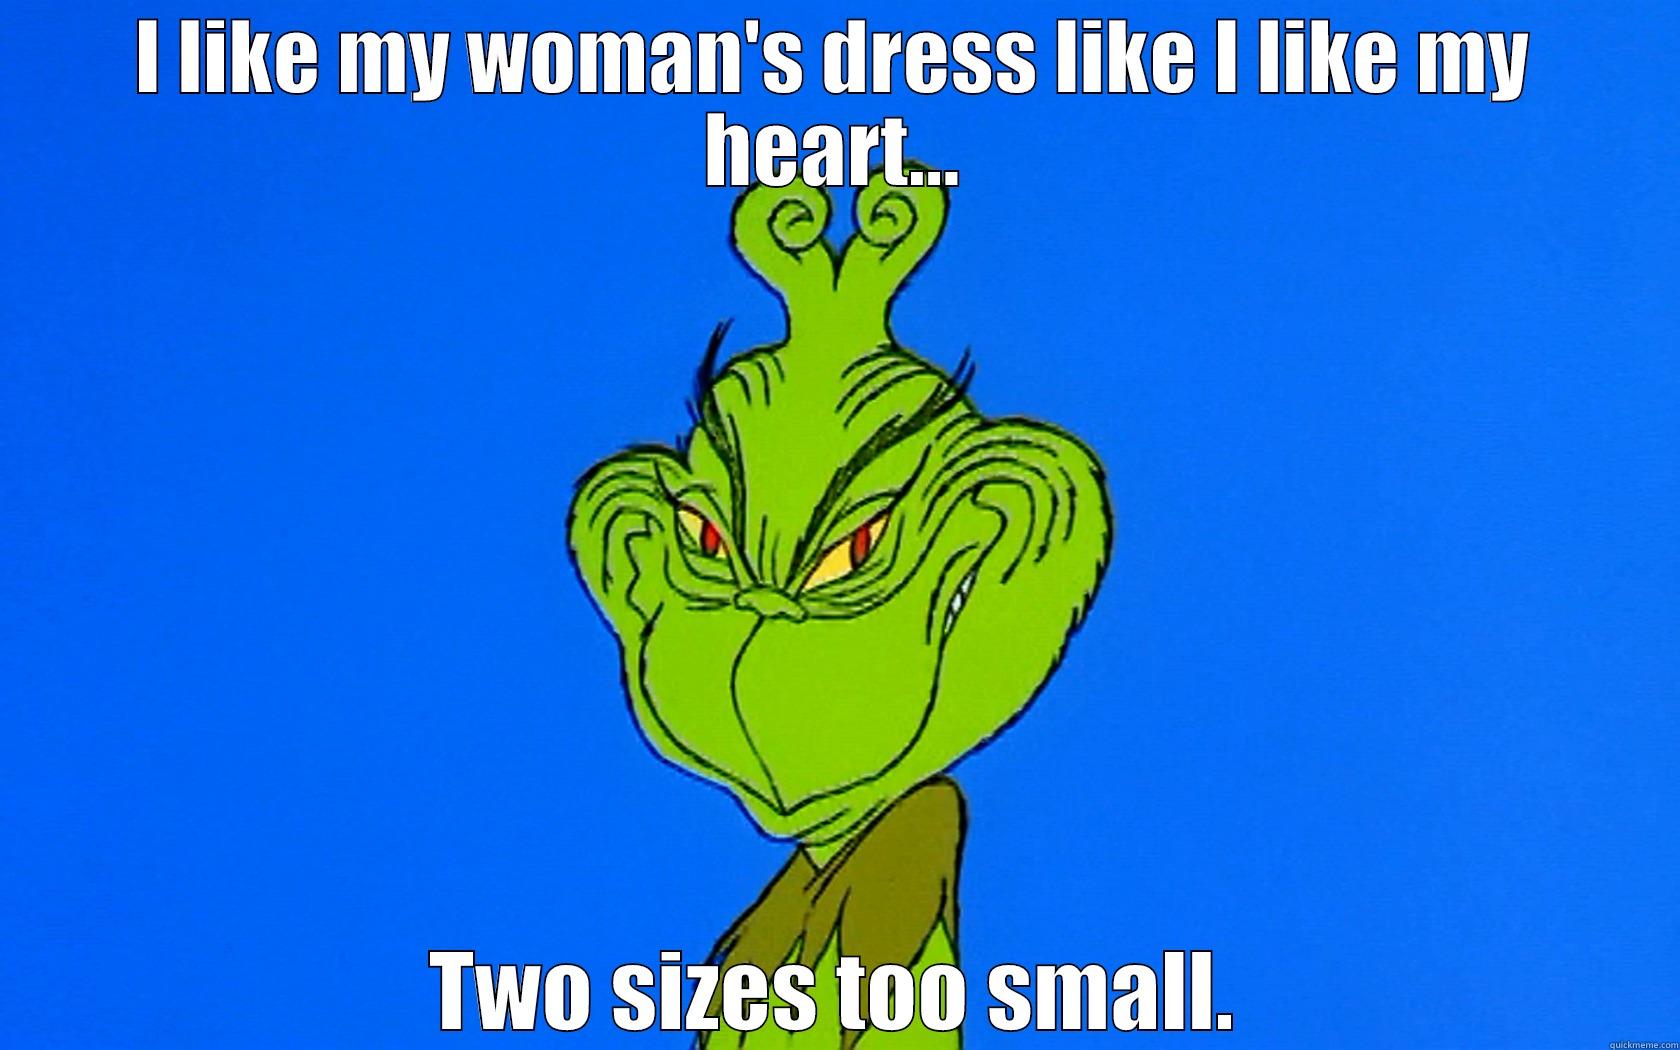 I LIKE MY WOMAN'S DRESS LIKE I LIKE MY HEART... TWO SIZES TOO SMALL. Misc